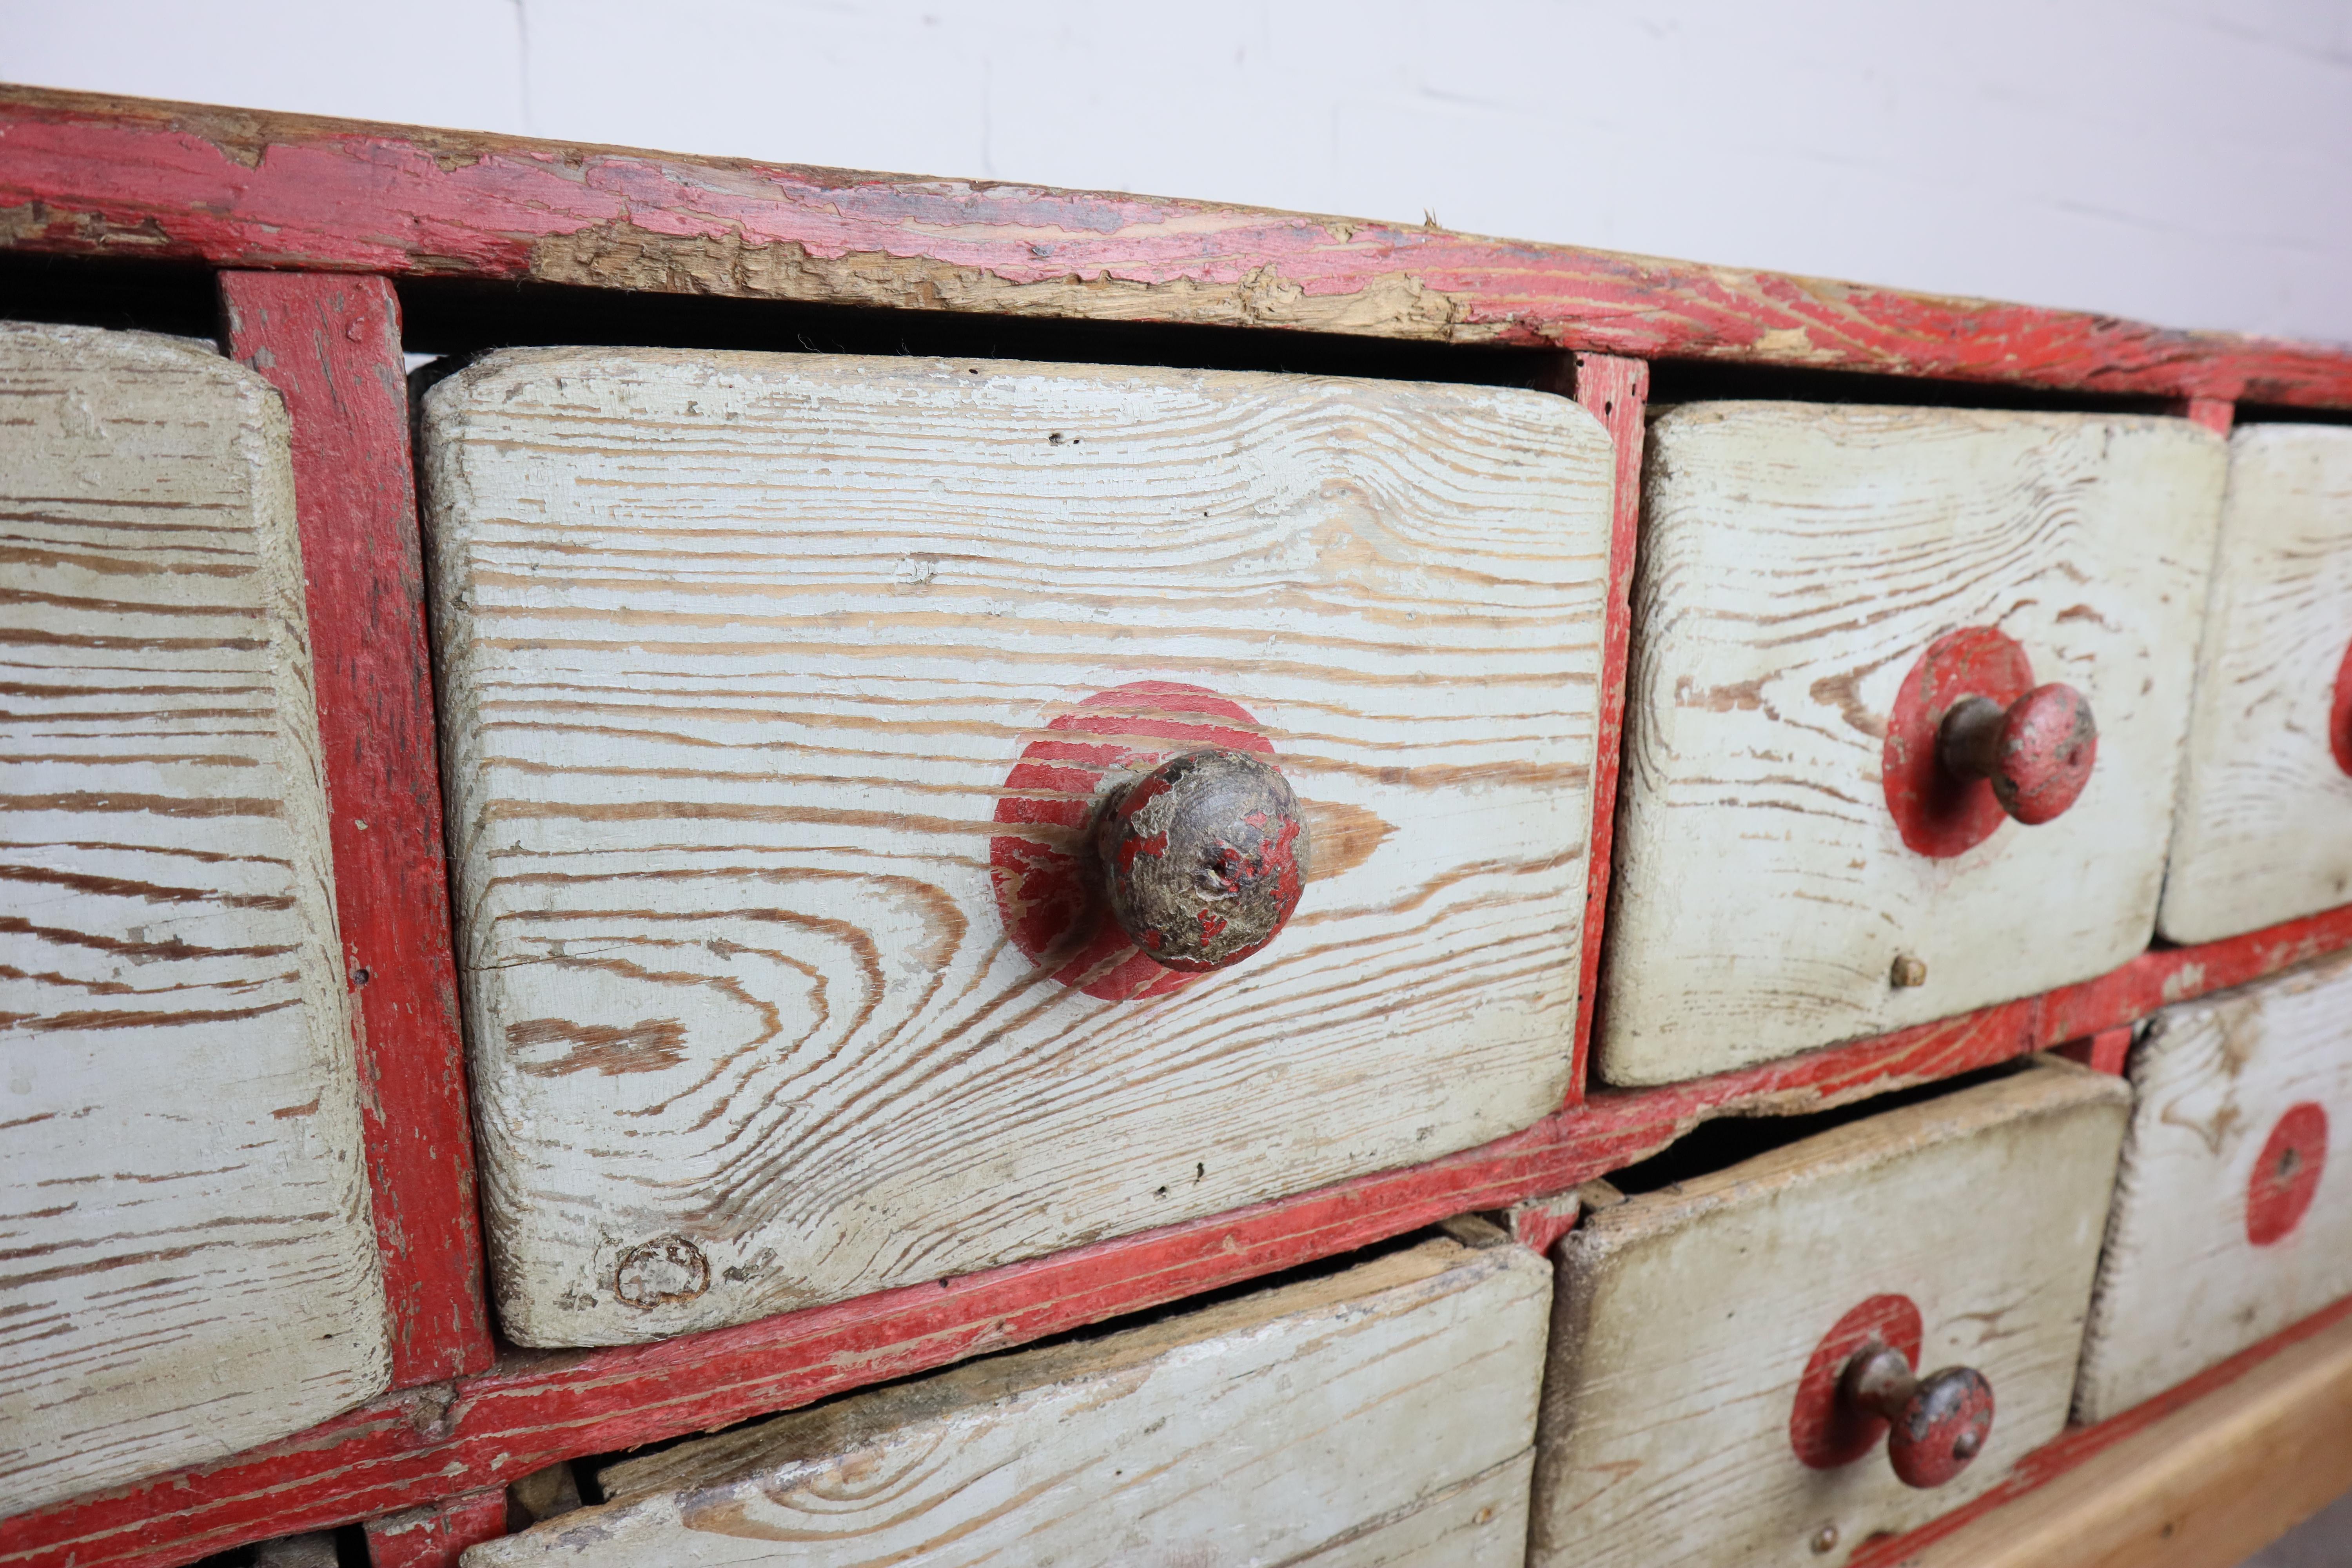 Antiker Schubladenschrank aus einer alten Werkstatt! 
Dieser Schrank hat durch jahrelangen Gebrauch eine unglaubliche Patina entwickelt.